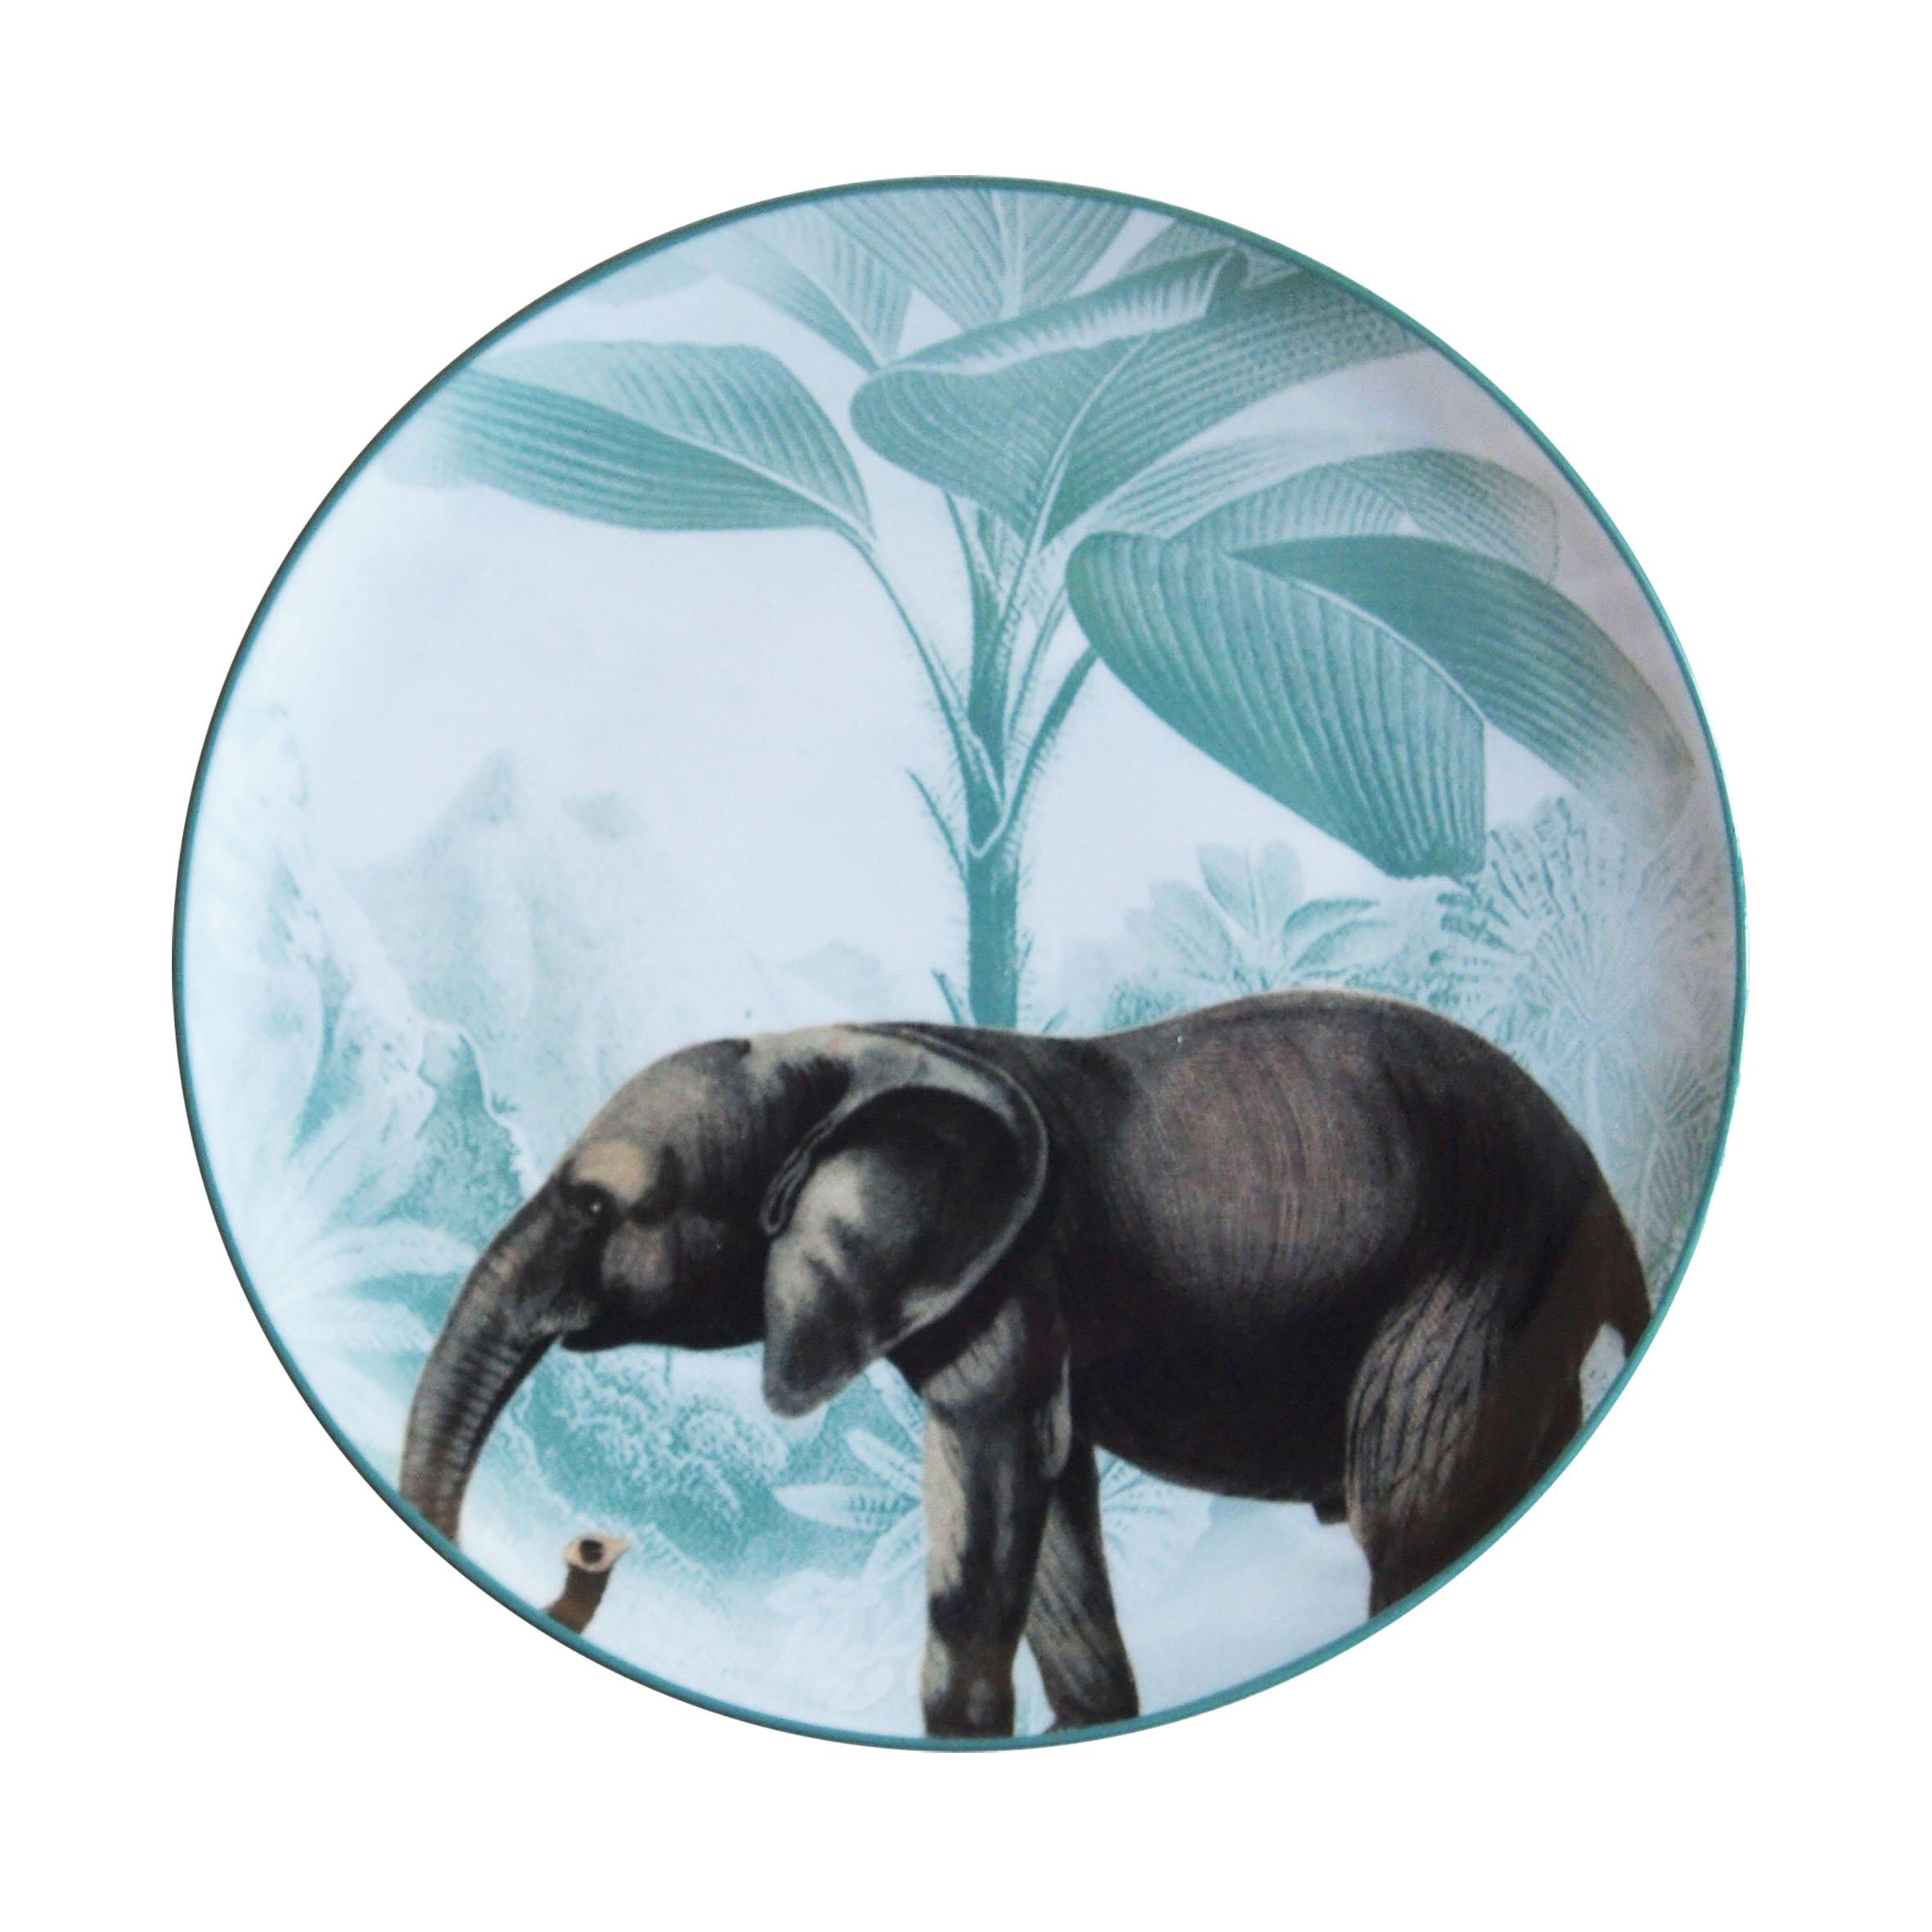 Ottomane-Elefanten-Porzellan-Essteller von Menagerie, handgefertigt in Italien